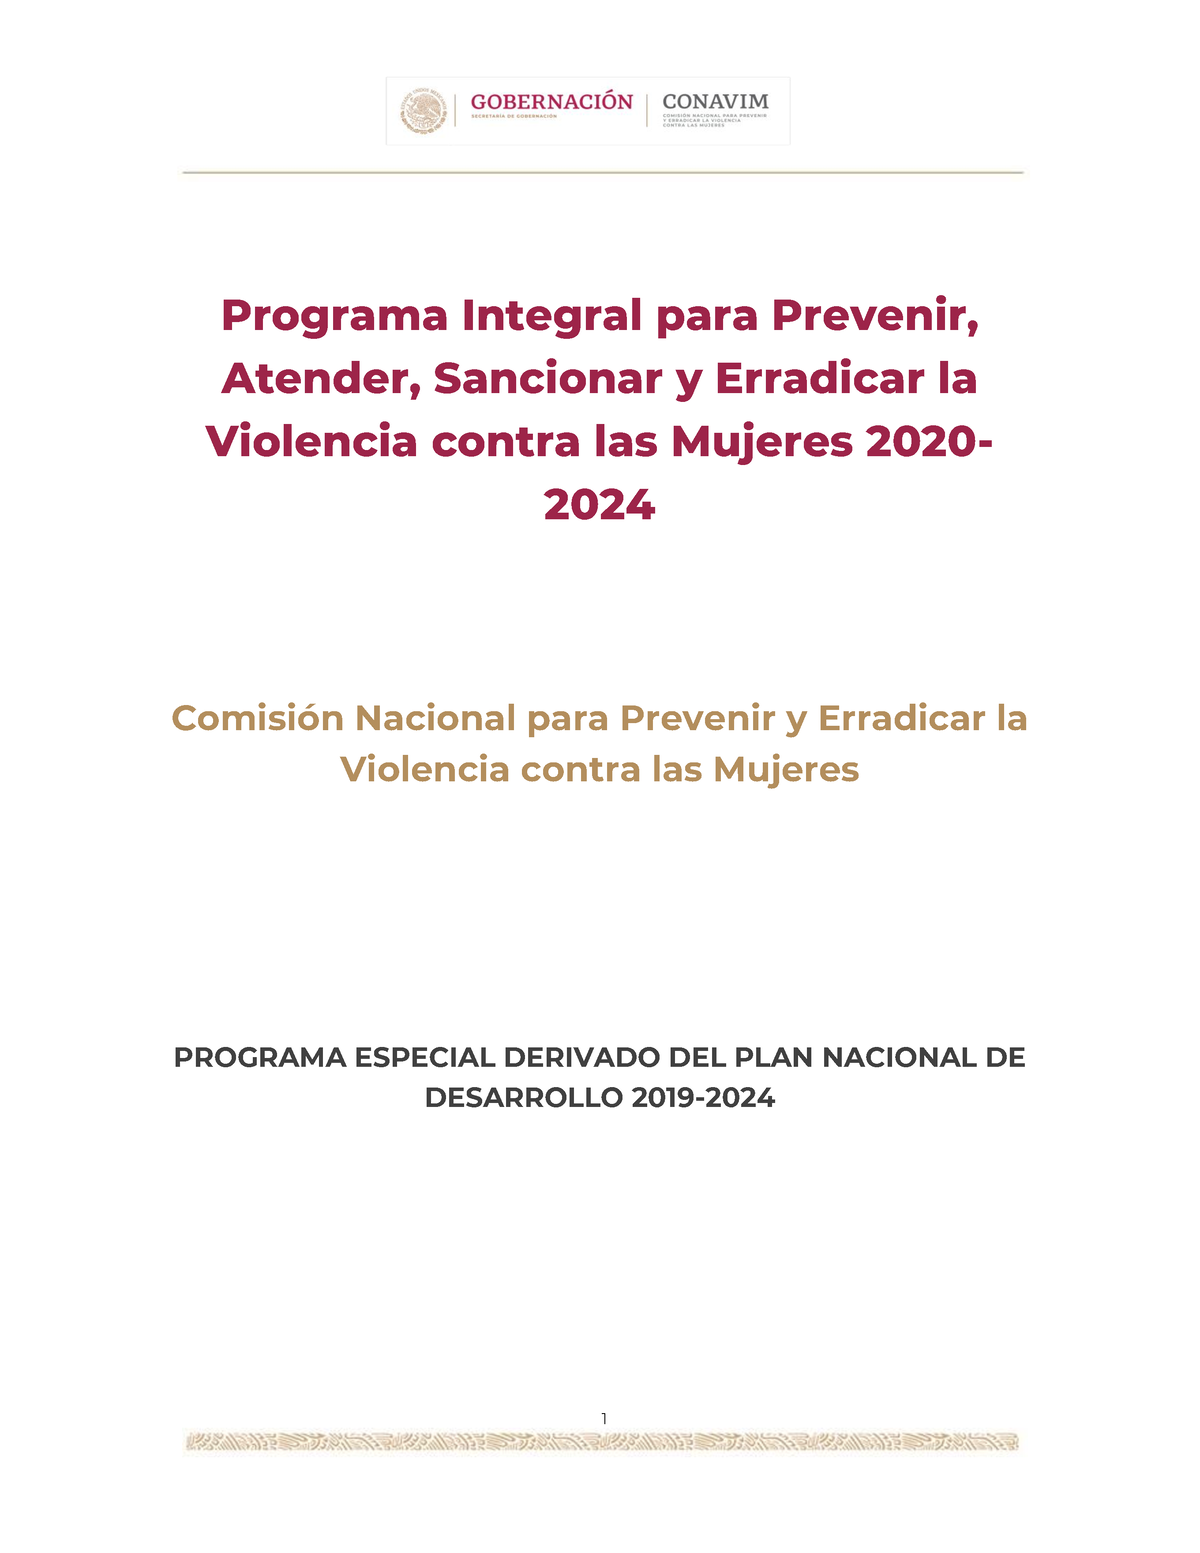 Programa Integral Para Prevenir Atender Sancionar Y Erradicar La Violencia Contra Las Mujeres 8392